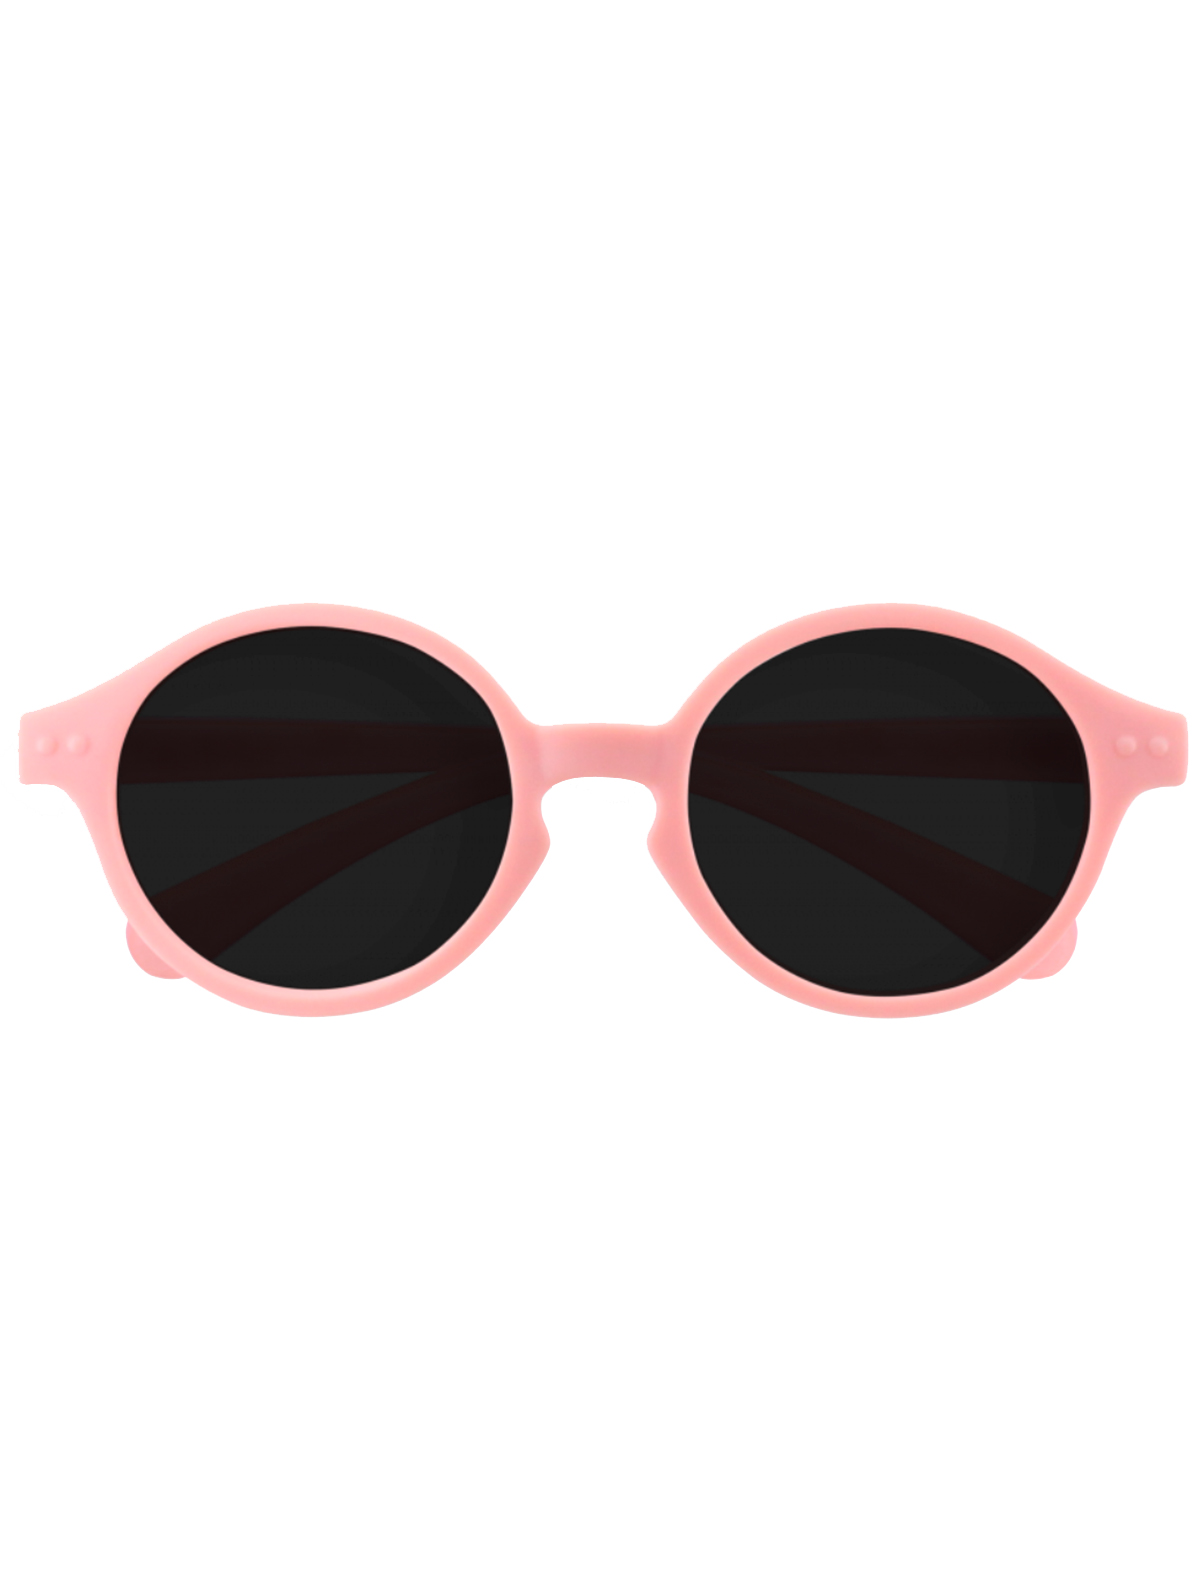 солнцезащитные очки izipizi малыши, розовые